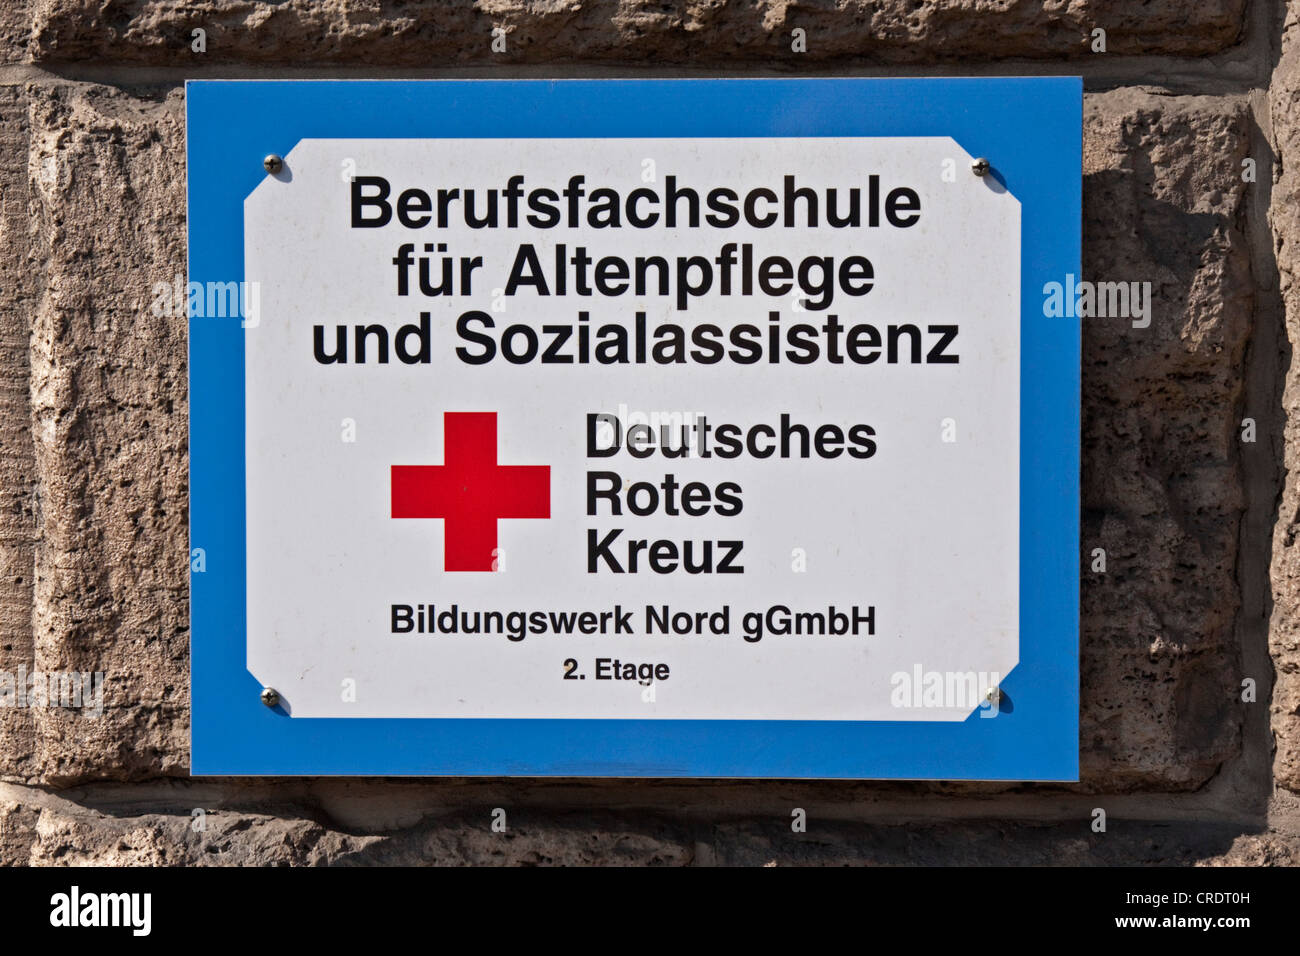 Sign on a building, Berufsfachschule fuer Altenpflege und Sozialassistenz, Deutsches Rotes Kreuz, German for Vocational School Stock Photo